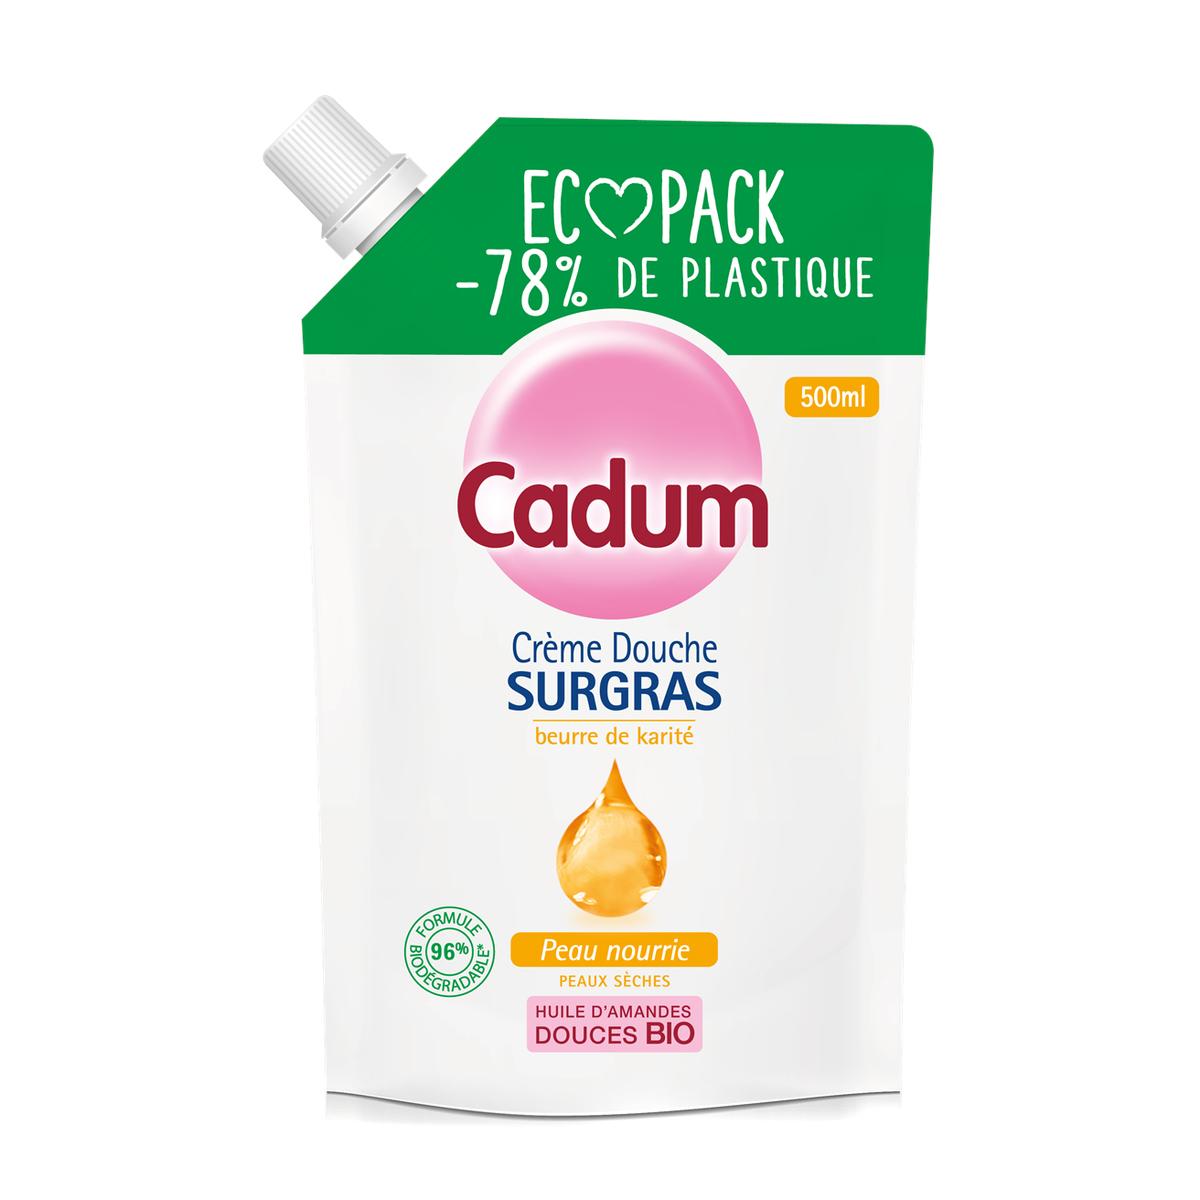 Cadum Crème Douche Eco Pack Surgras à l'huile d'amandes douces Bio et au  beurre de karité